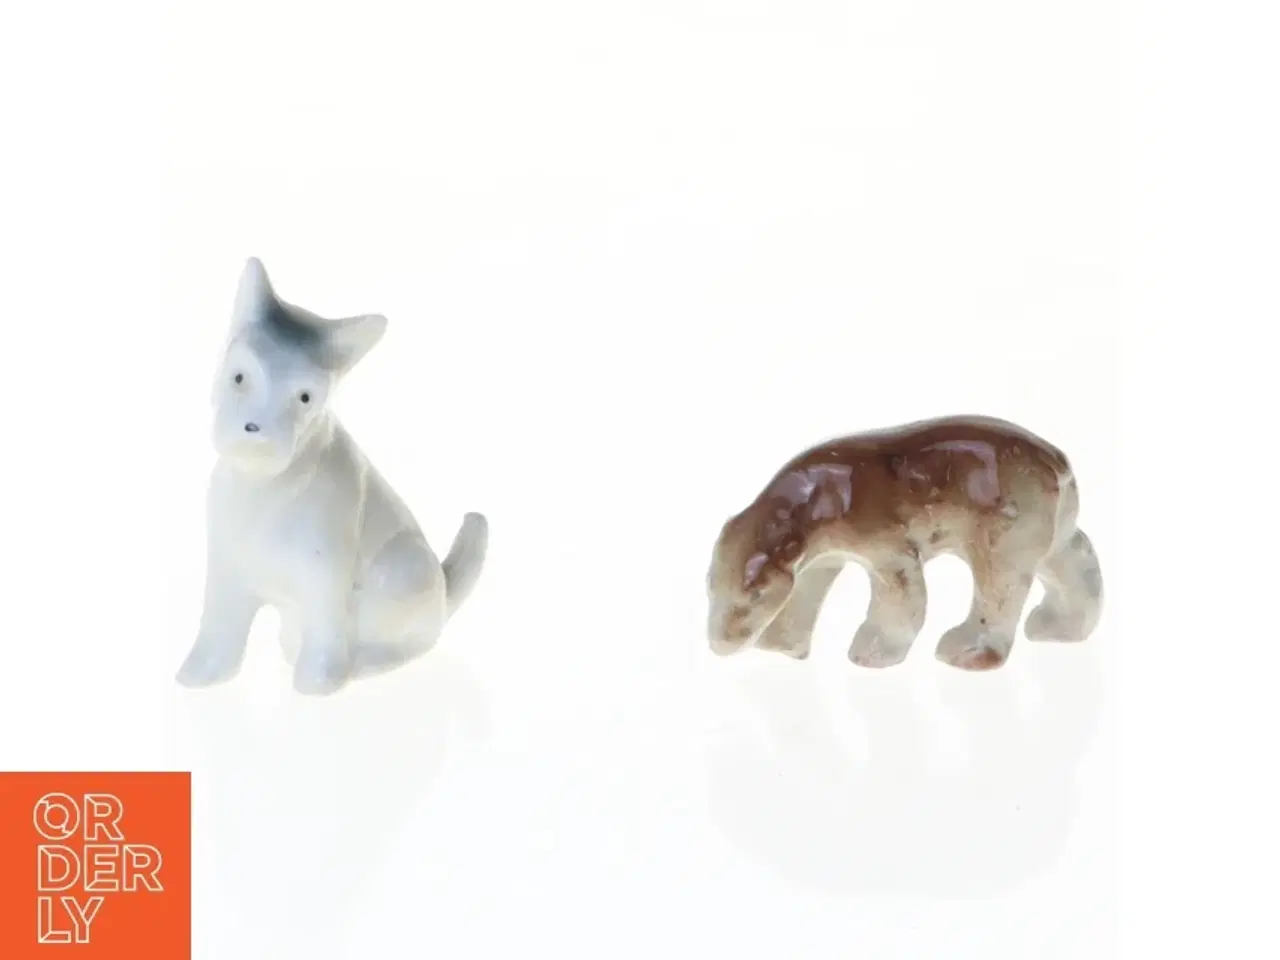 Billede 1 - Porcelænsfigurer af hunde (str. 5 x 4 cm og 4 x 2 cm)